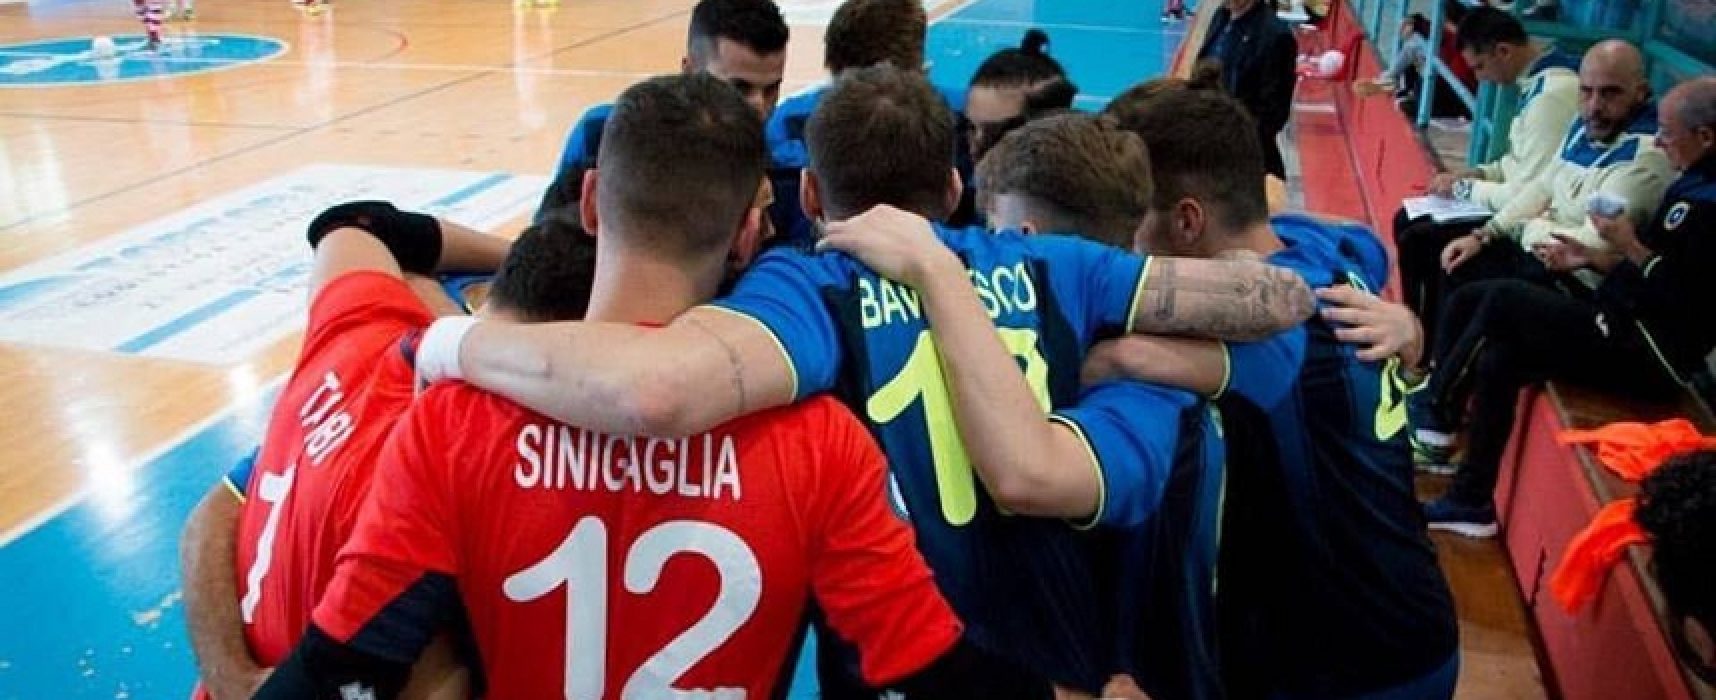 Futsal Bisceglie, a Barletta ultima speranza playoff